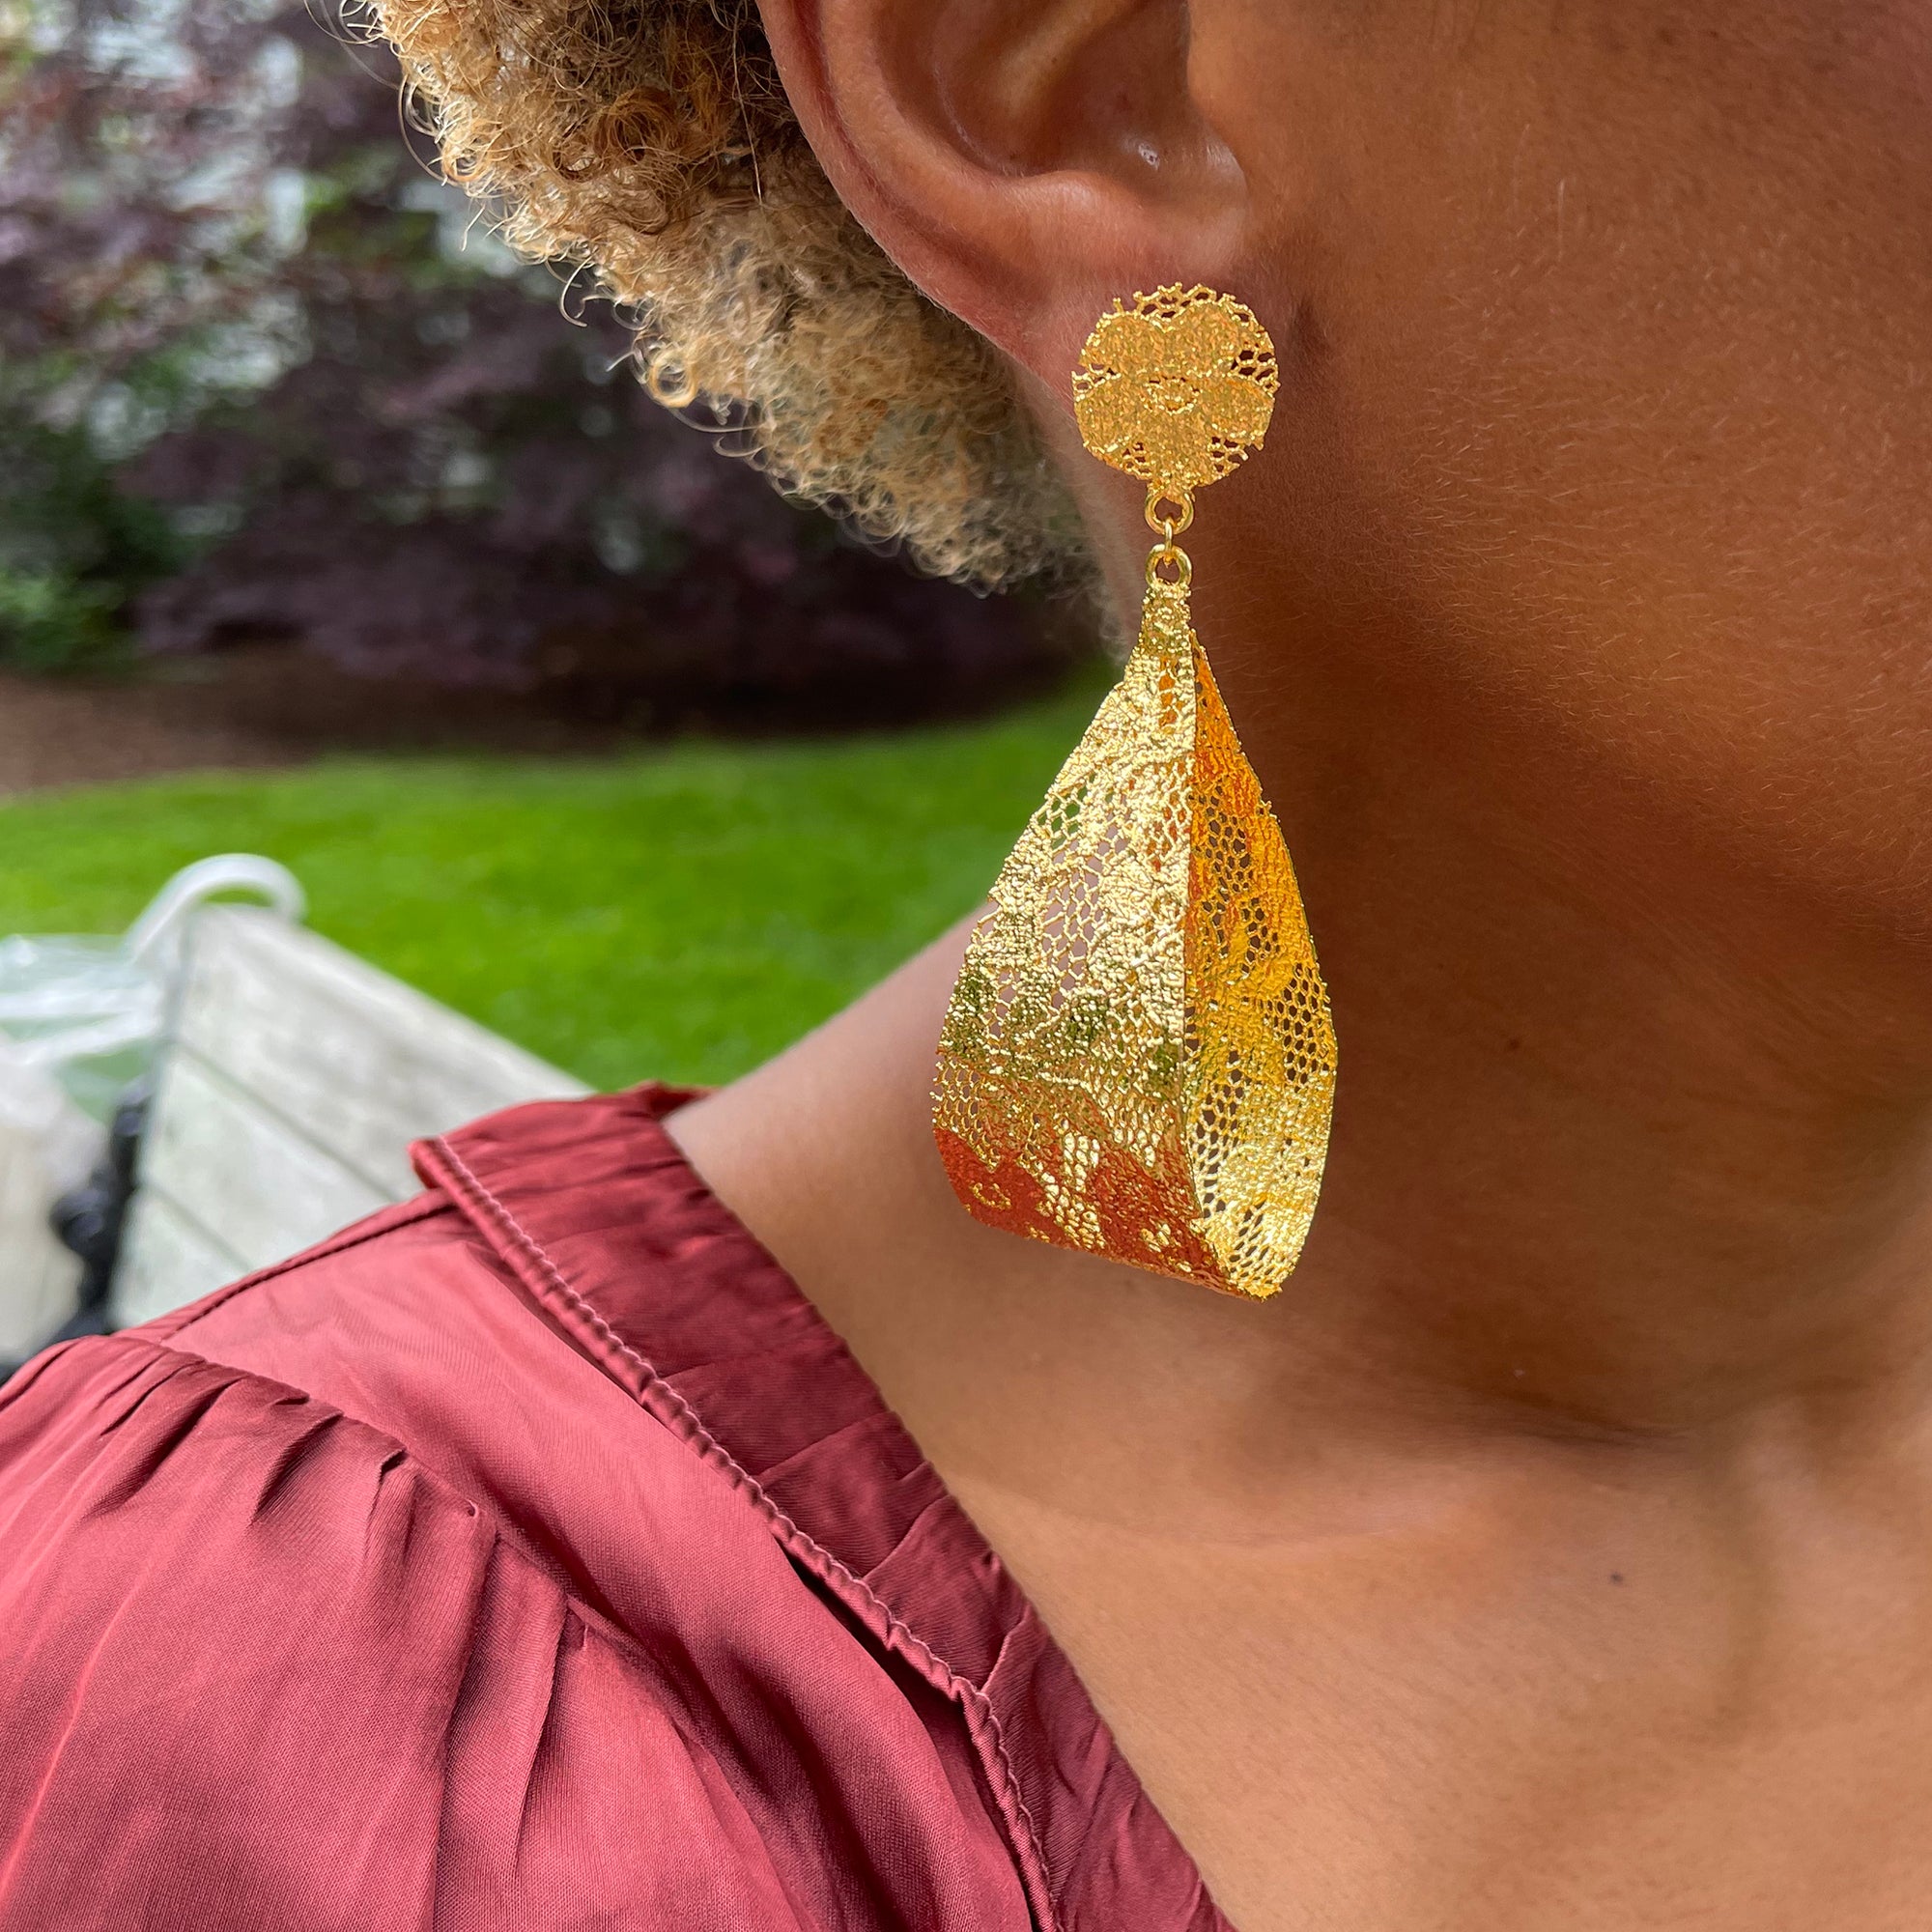 Camie lace loop earrings in 24k gold.